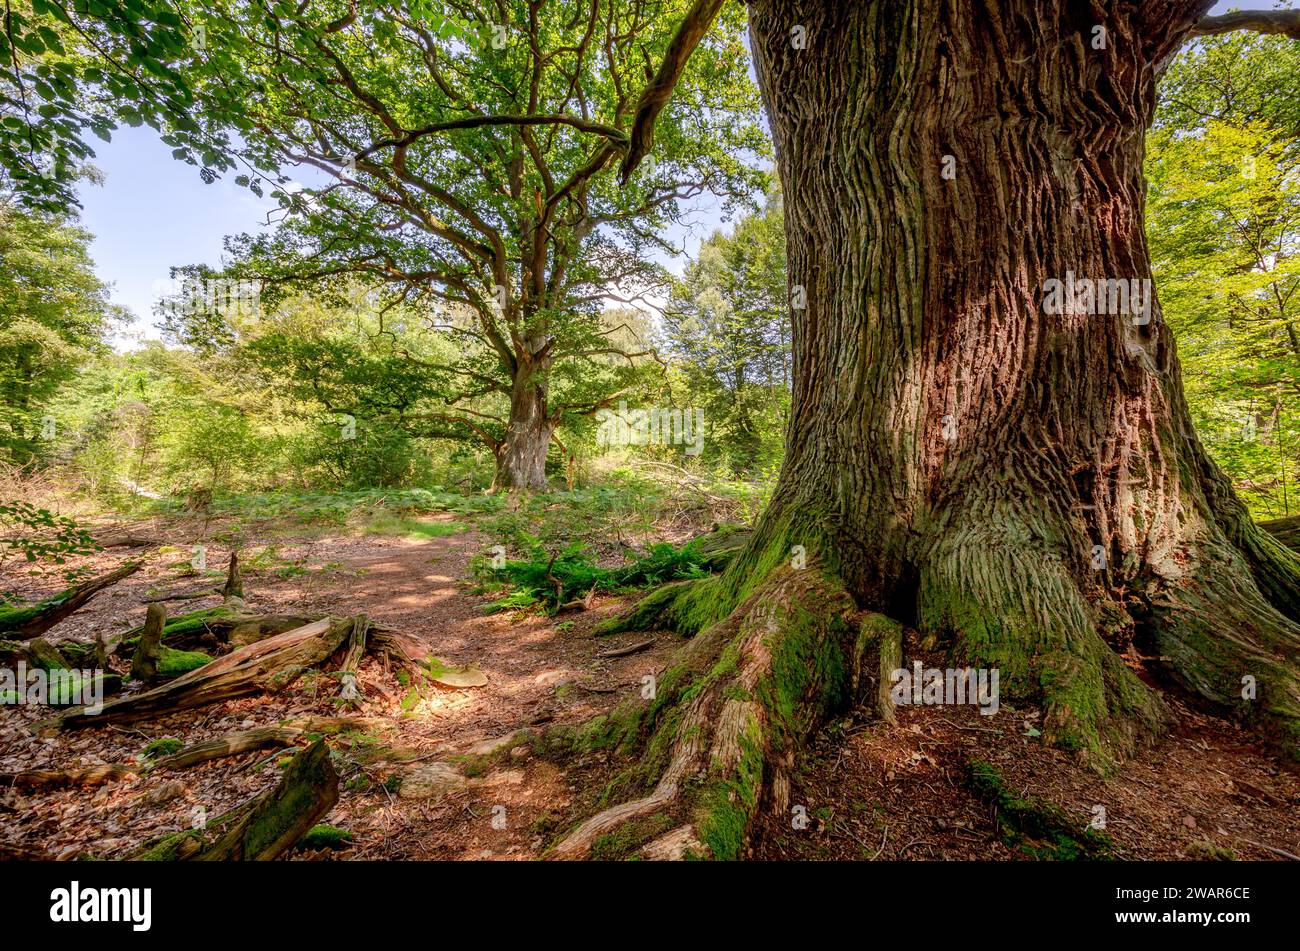 Antica quercia nella foresta primordiale di Sababurg - Assia, Germania Foto Stock